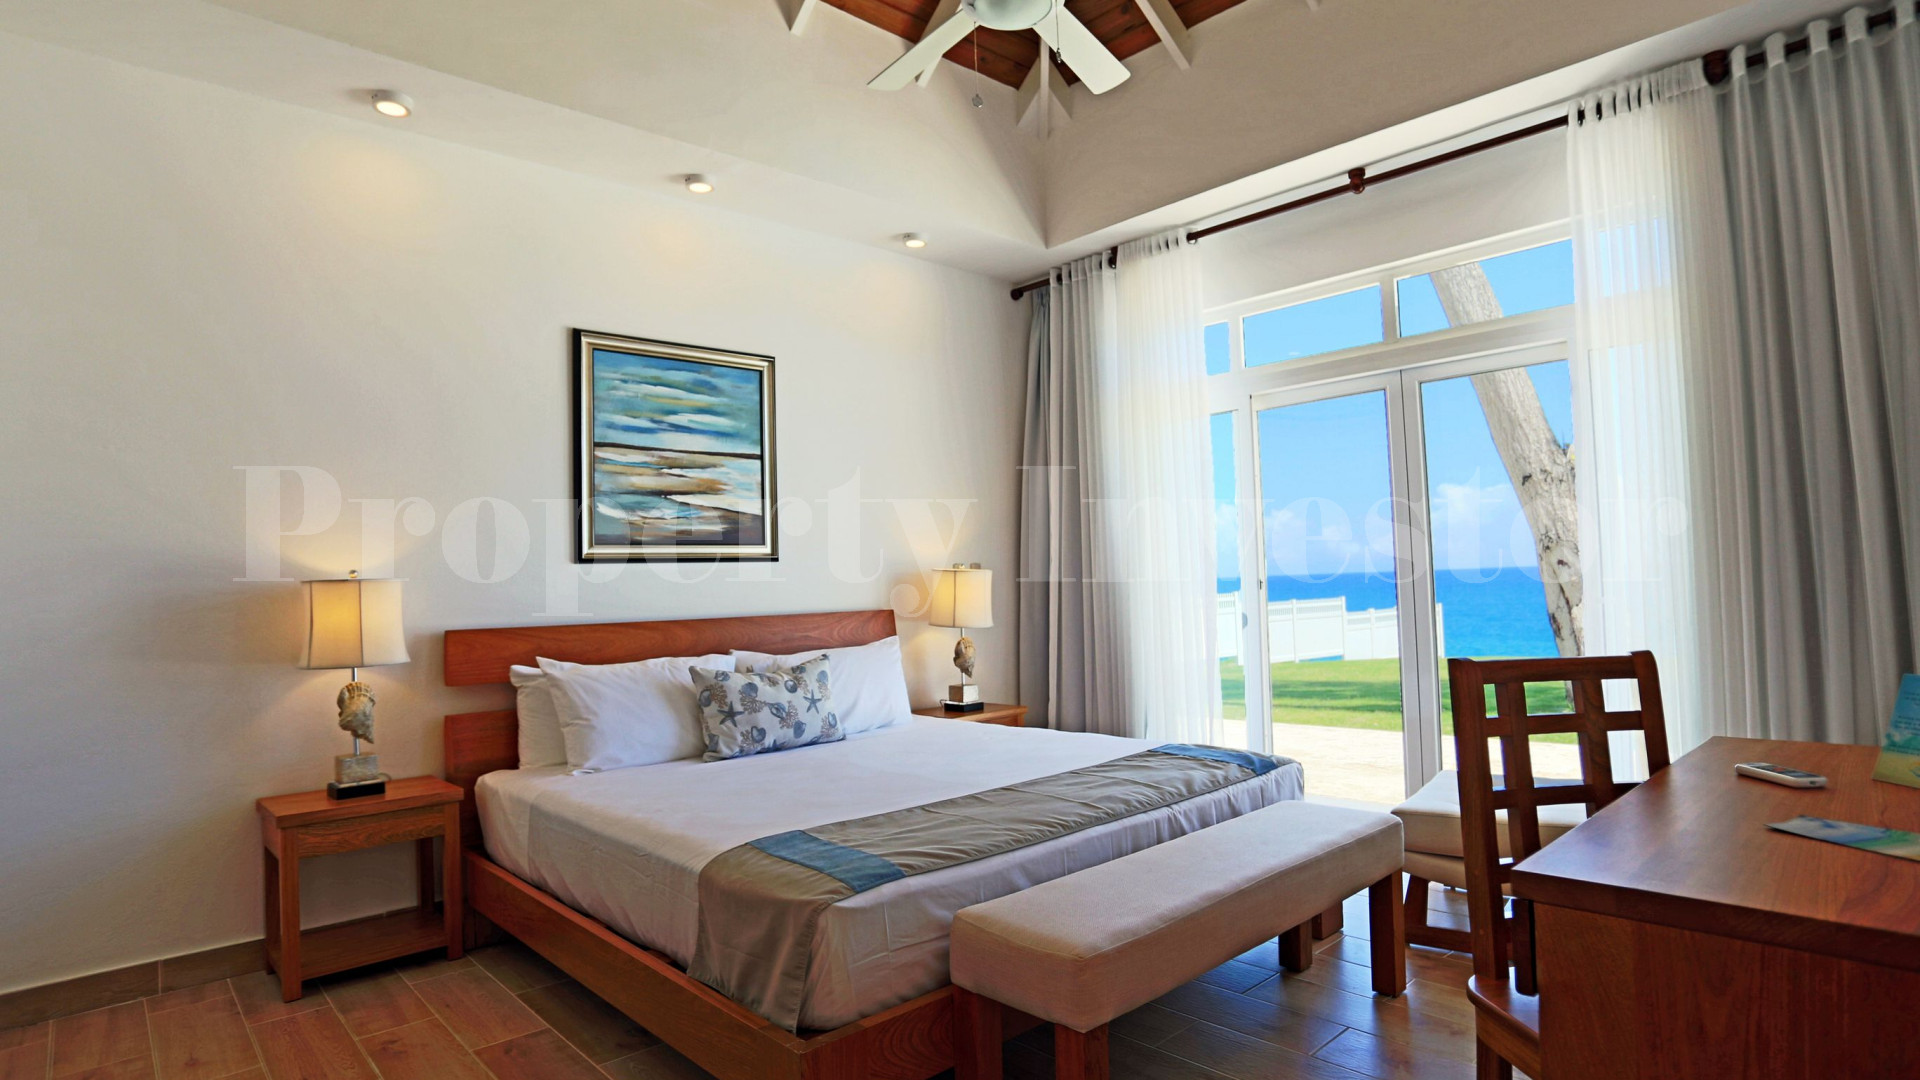 Вилла с 3 спальнями на берегу моря в Доминиканской Республике с финансирование на 30 лет (Вилла 4)